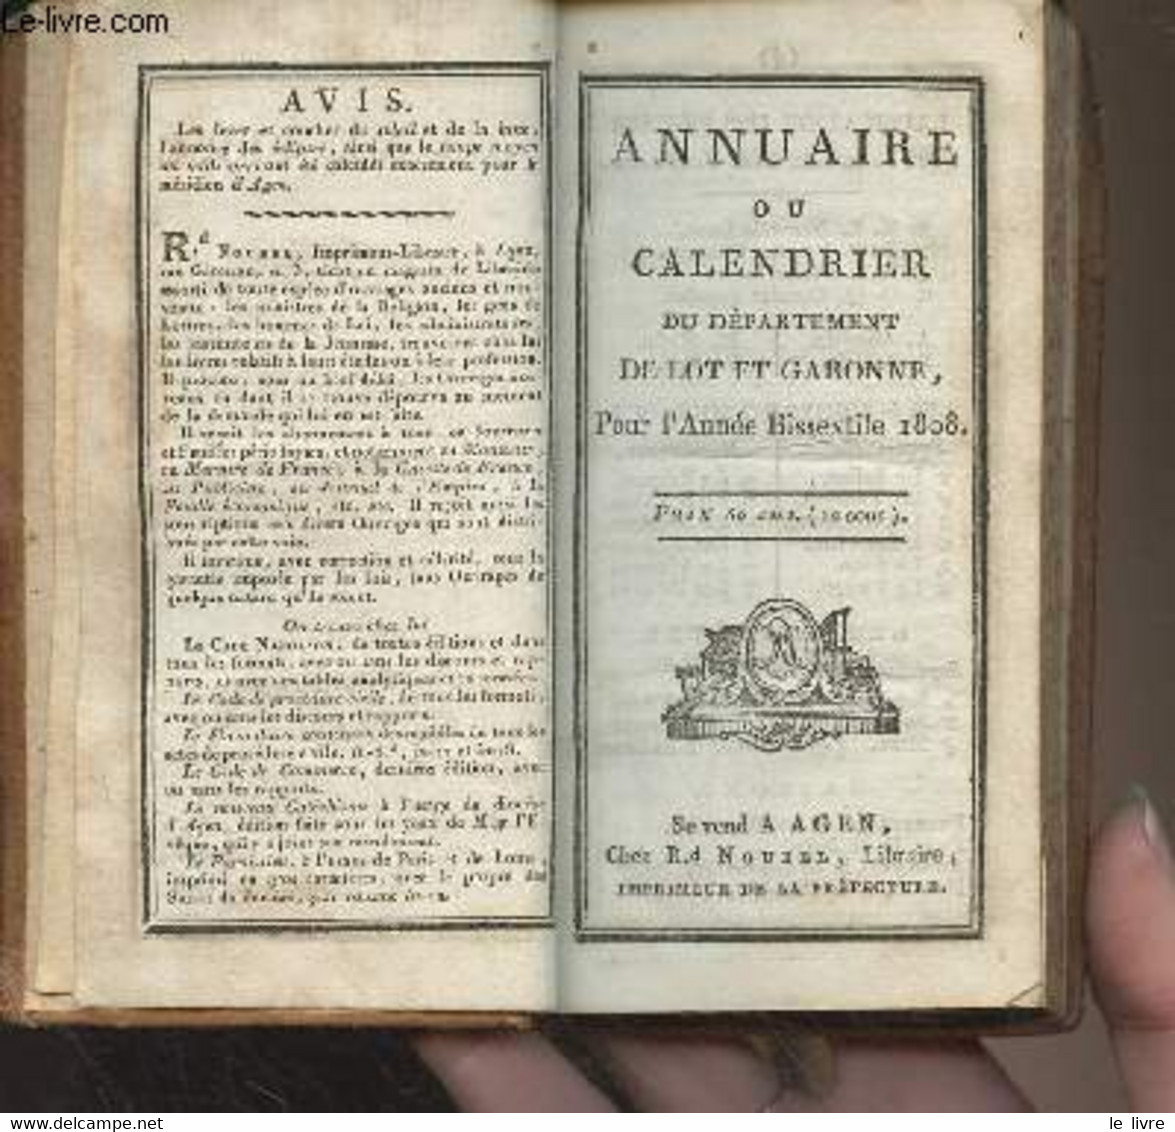 Annuaire Ou Calendrier Du Département De Lot Et Garonne Pour L'année Bissextile 1808 - Collectif - 1808 - Agende & Calendari